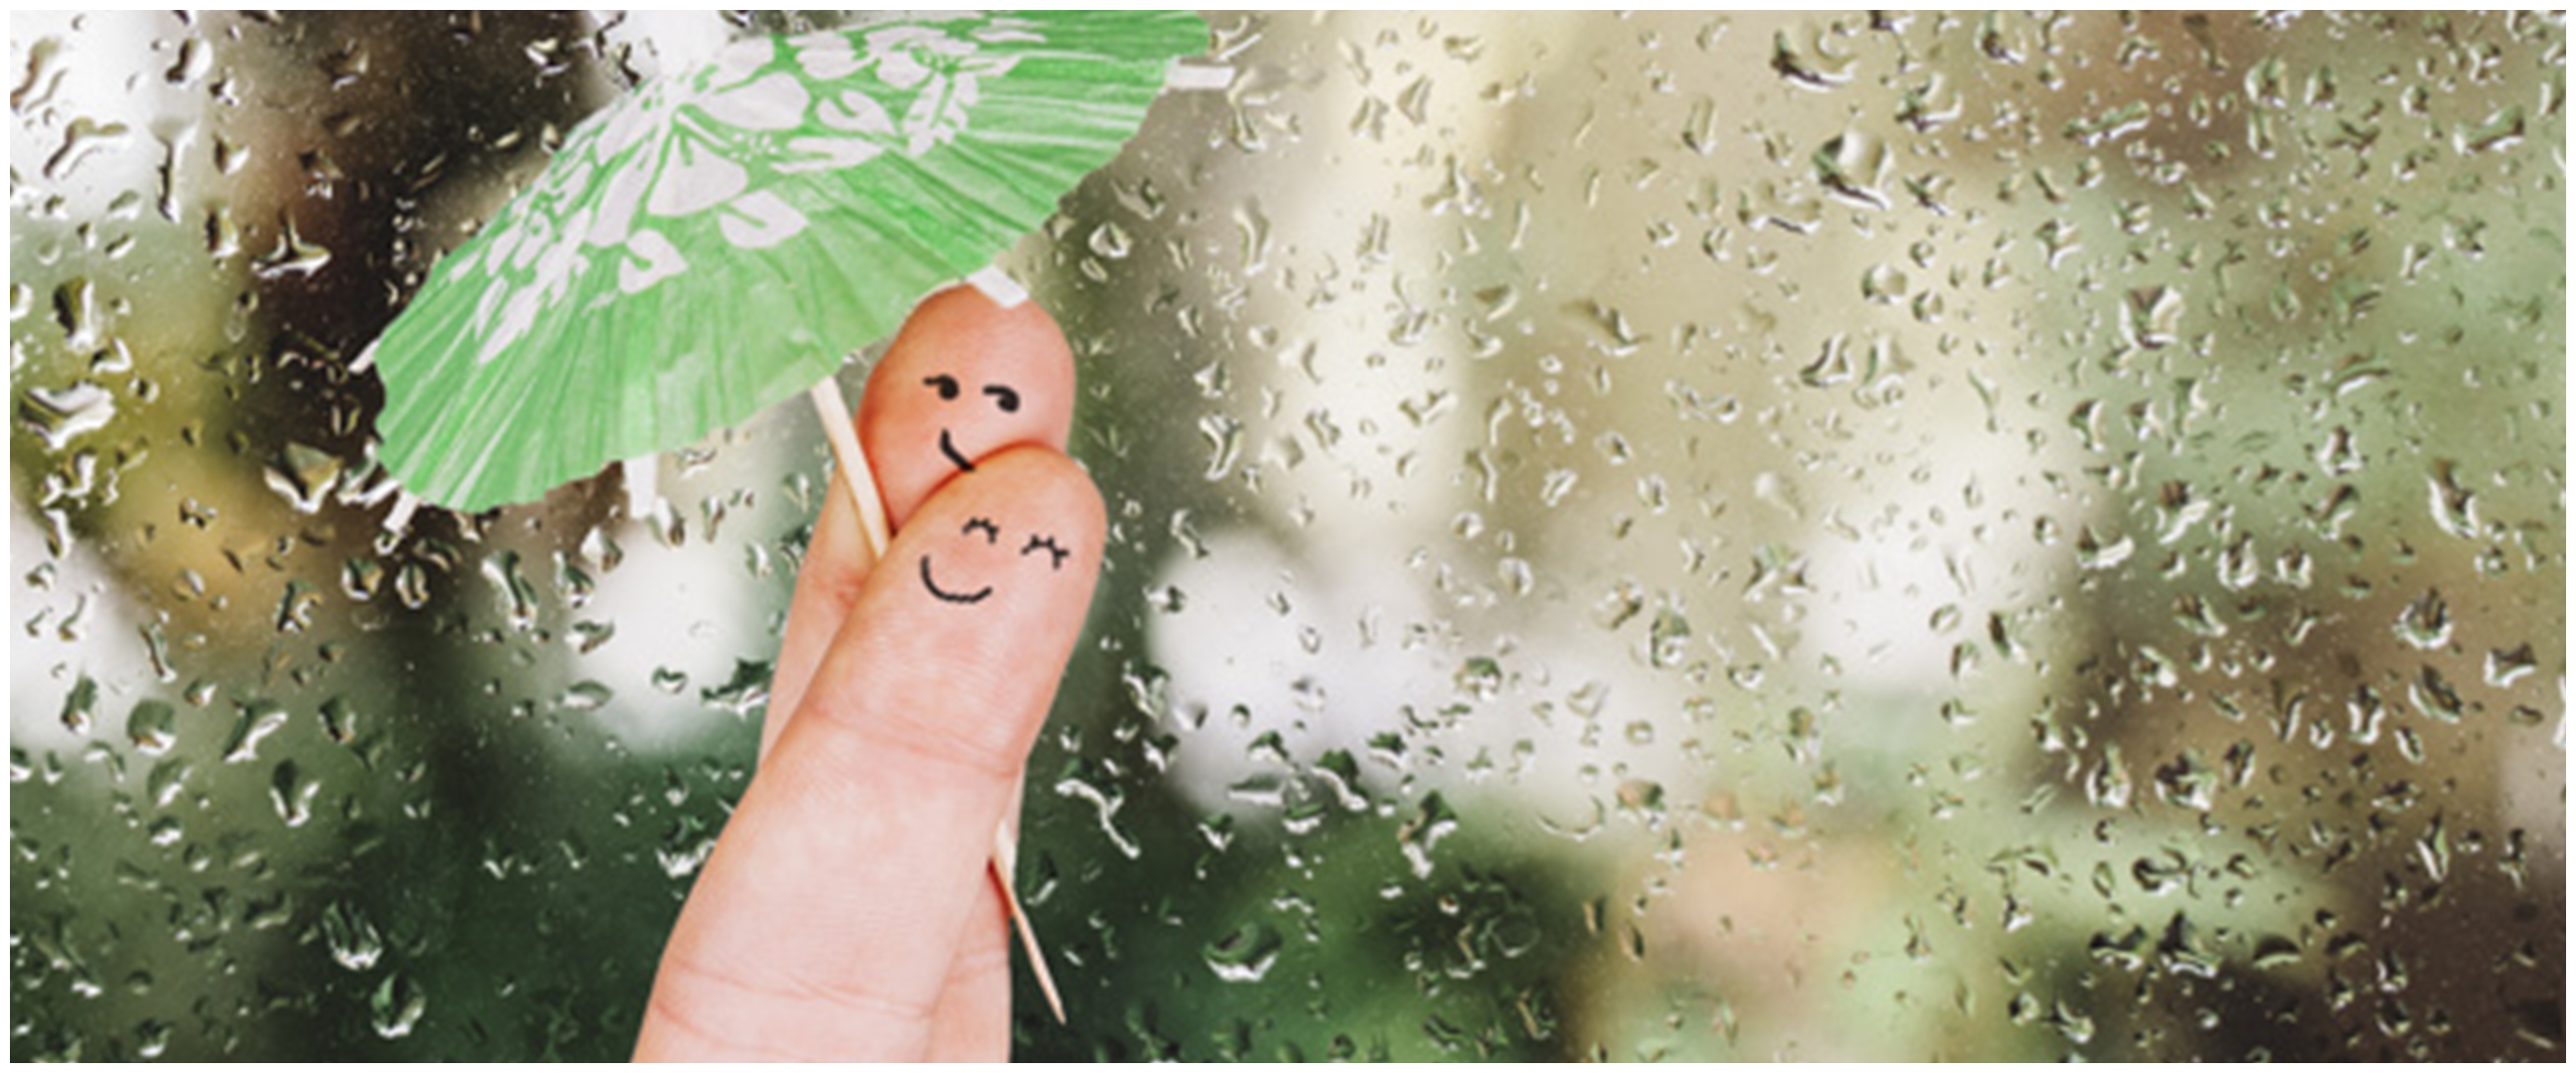 50 Kata kata  romantis tentang hujan bikin hati  jadi adem